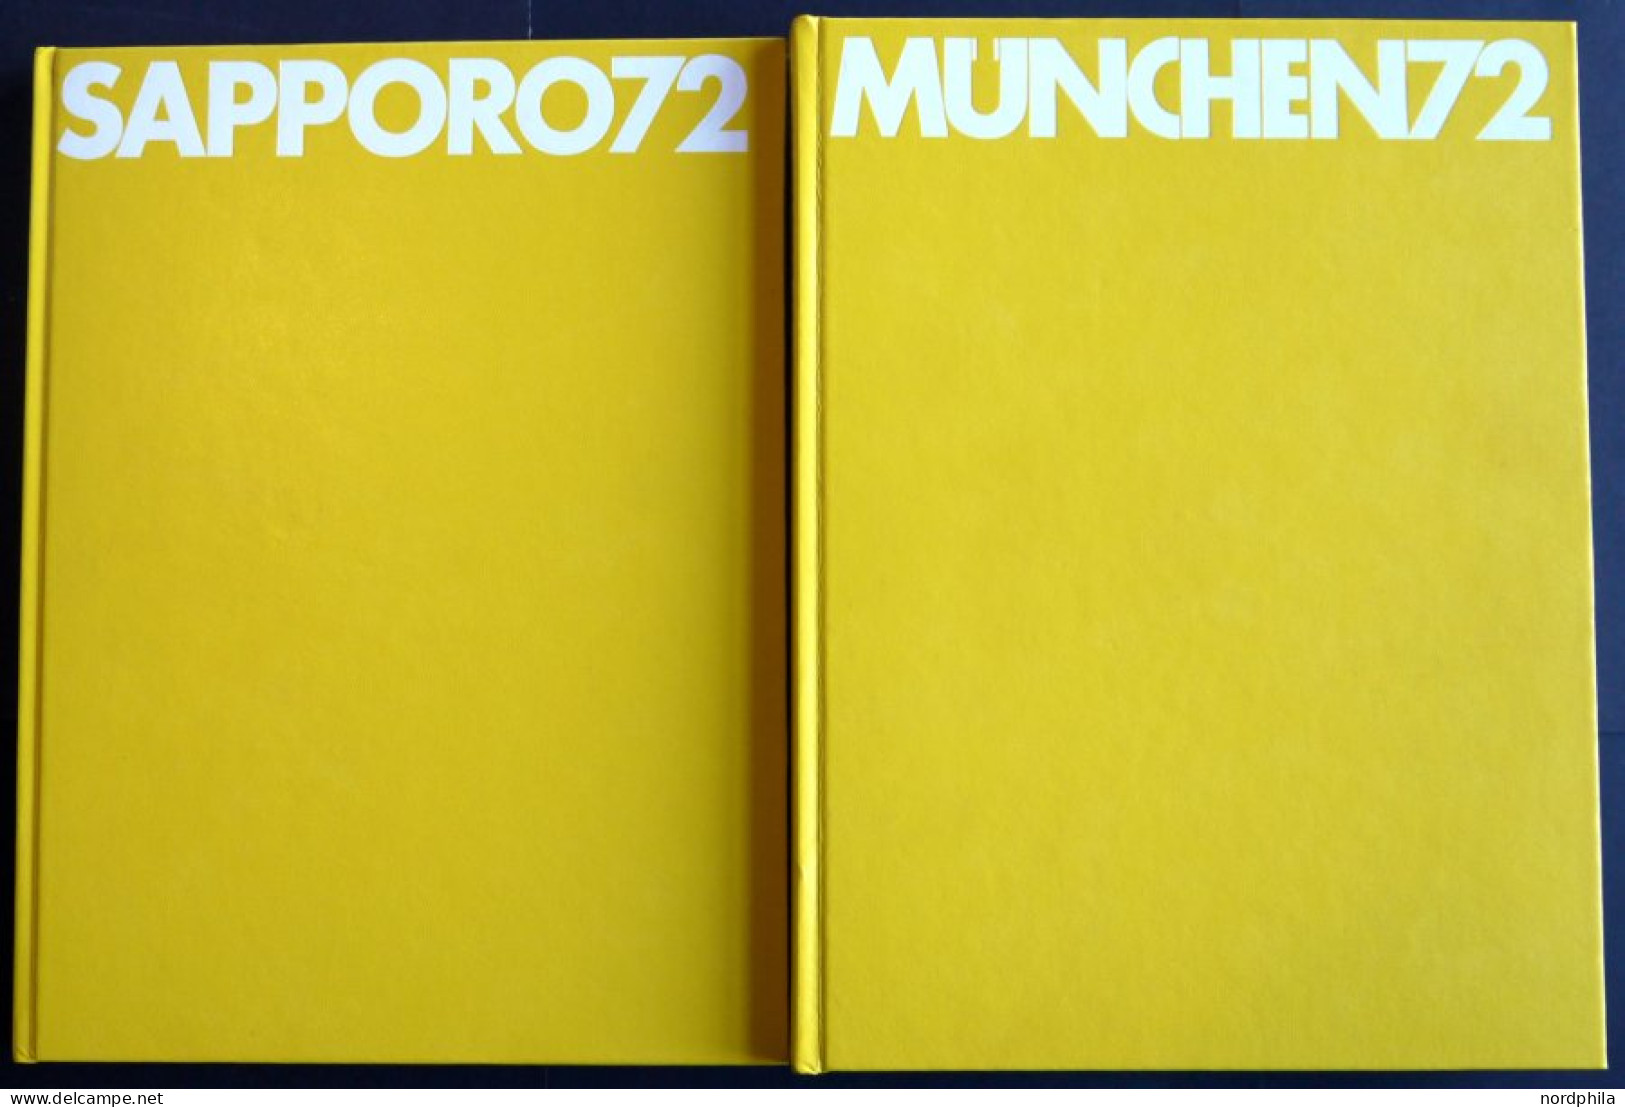 SACHBÜCHER München 72 Und Sapporo 72, 2 Illustrierte Bücher Im Karton, Herausgegeben Von Der OSB-Olympische Sport Biblio - Other & Unclassified